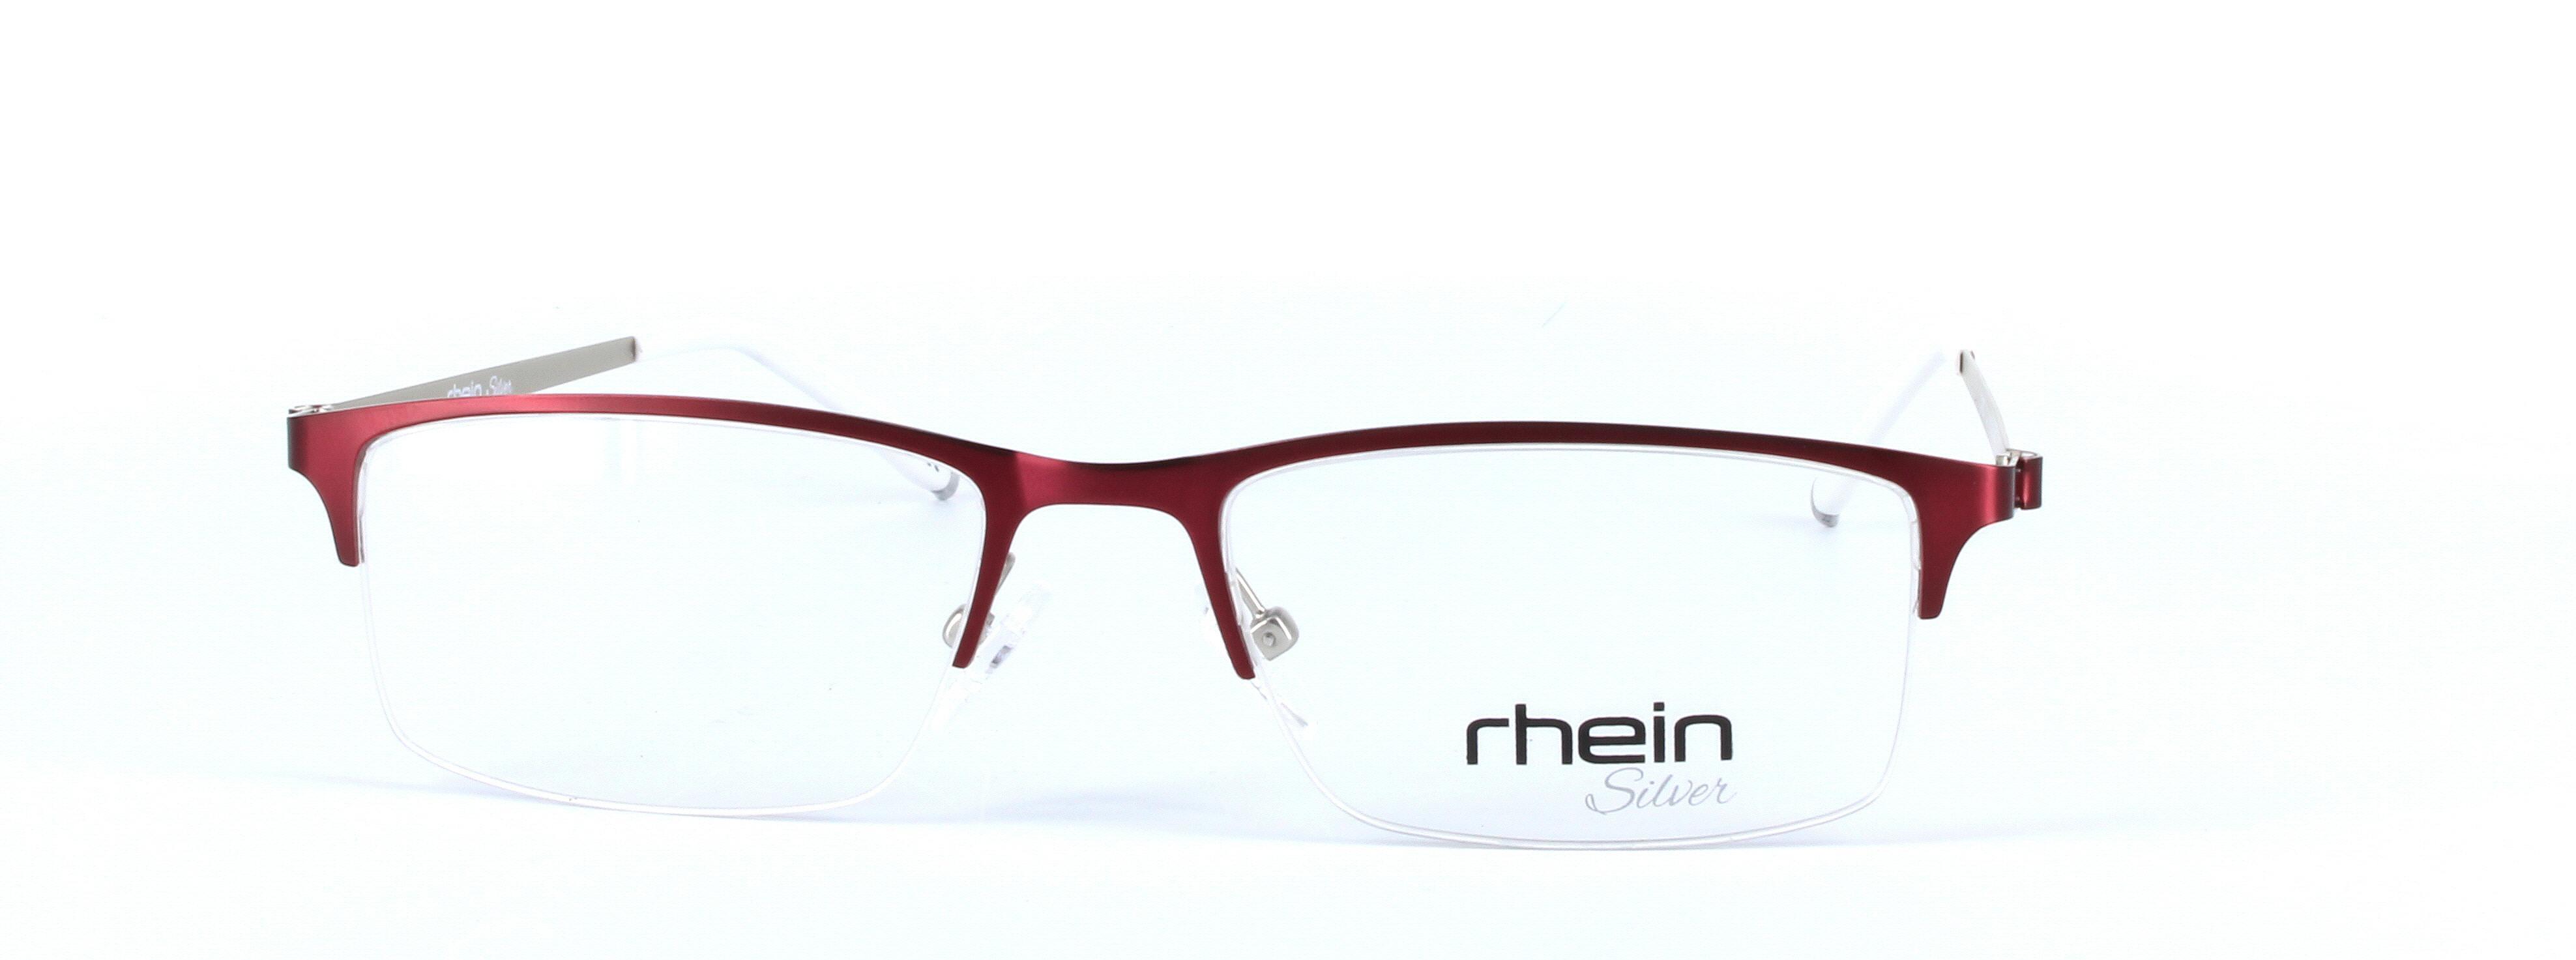 Kalem Red Semi Rimless Rectangular Metal Glasses - Image View 5